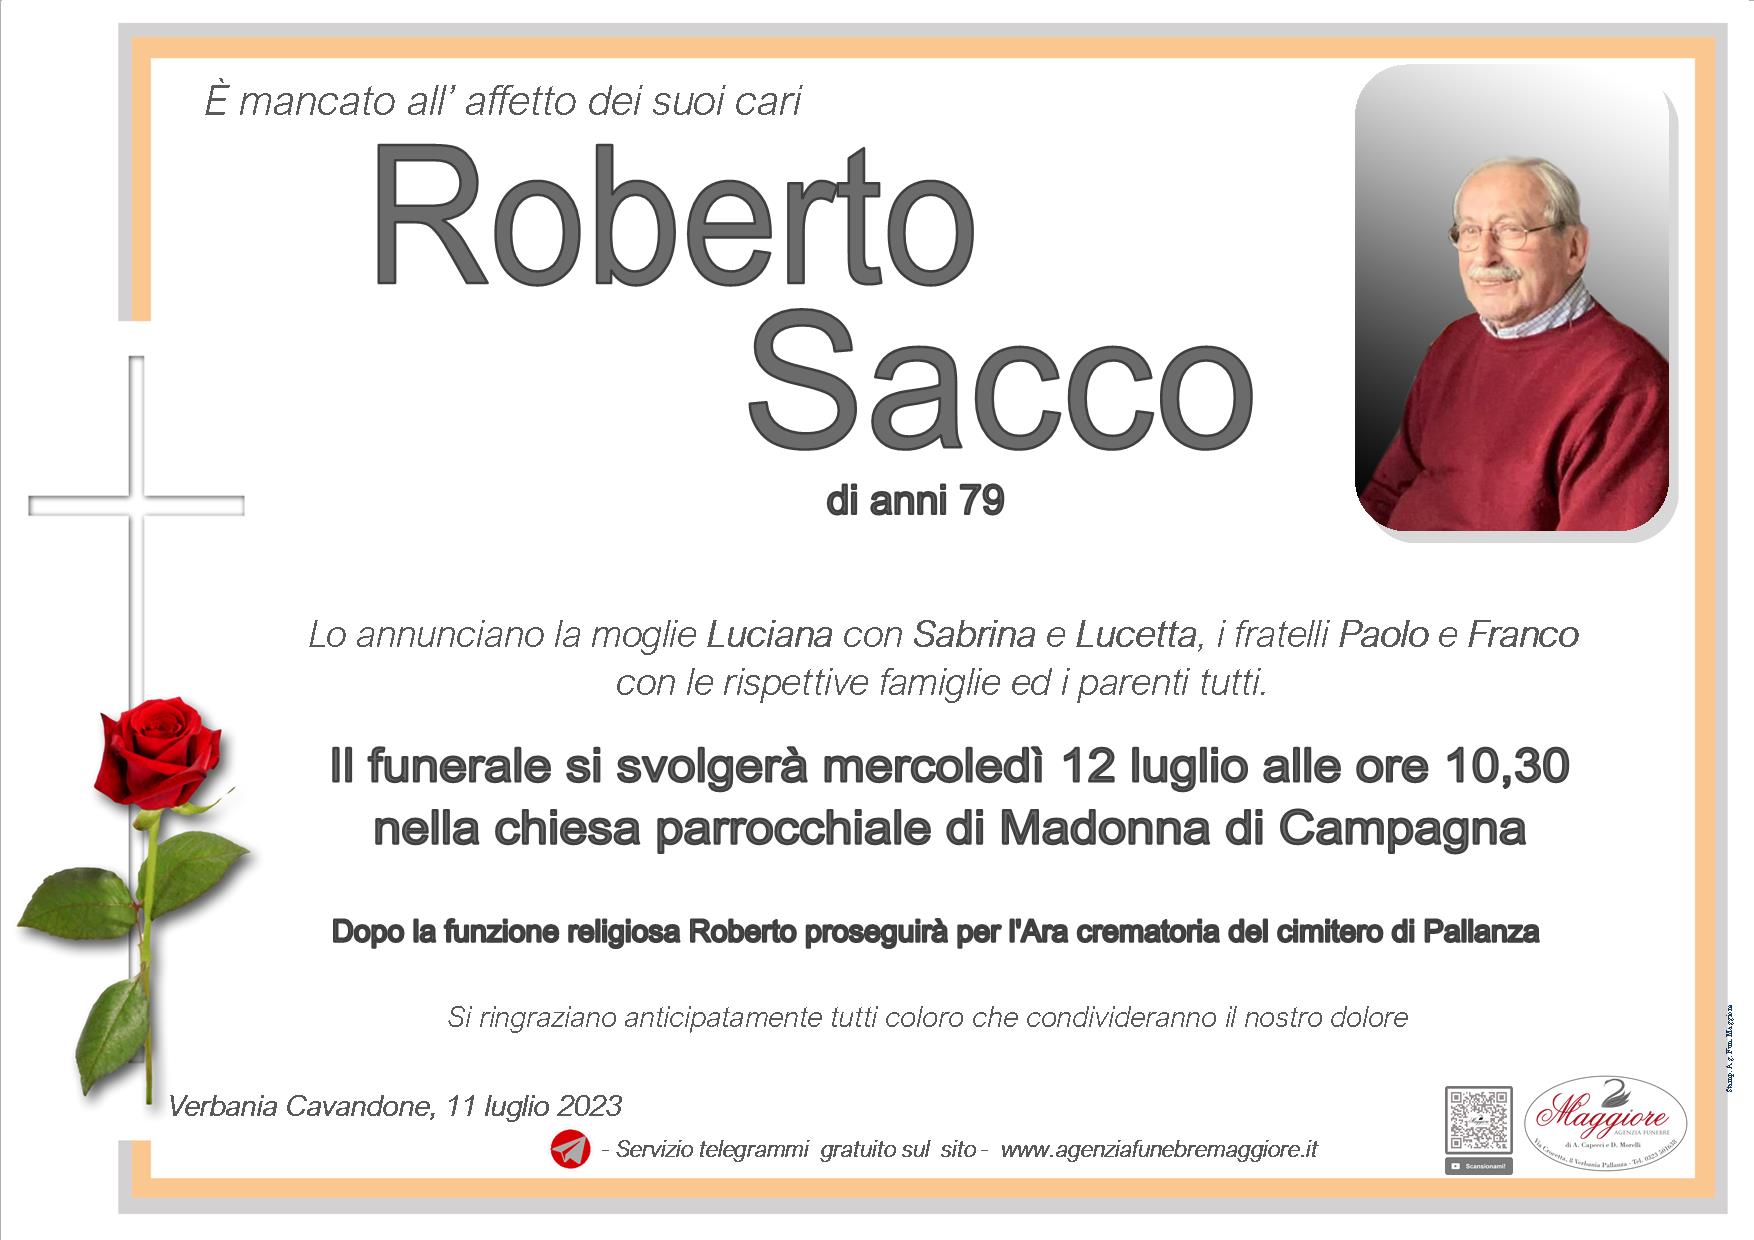 Roberto Sacco